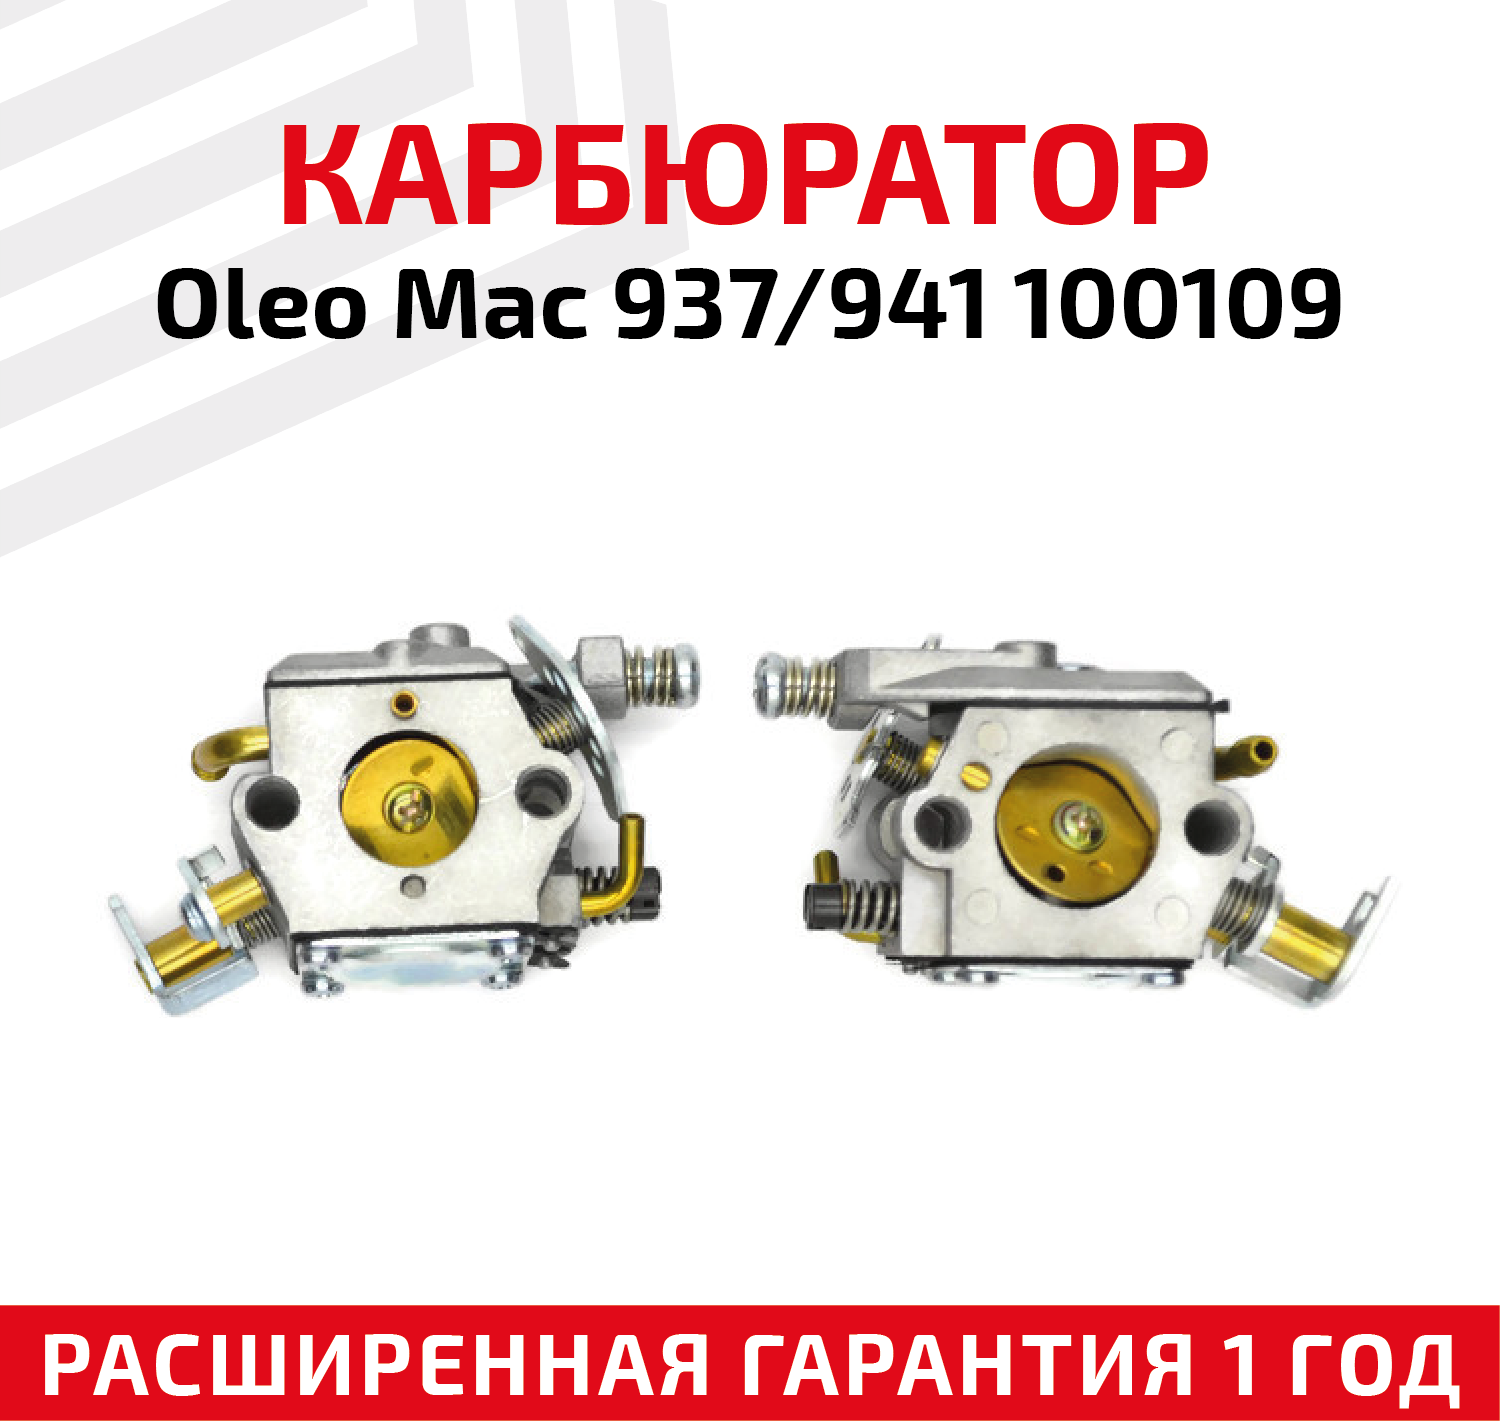 Карбюратор для бензопилы (цепной пилы) Oleo Mac 937/941 100109